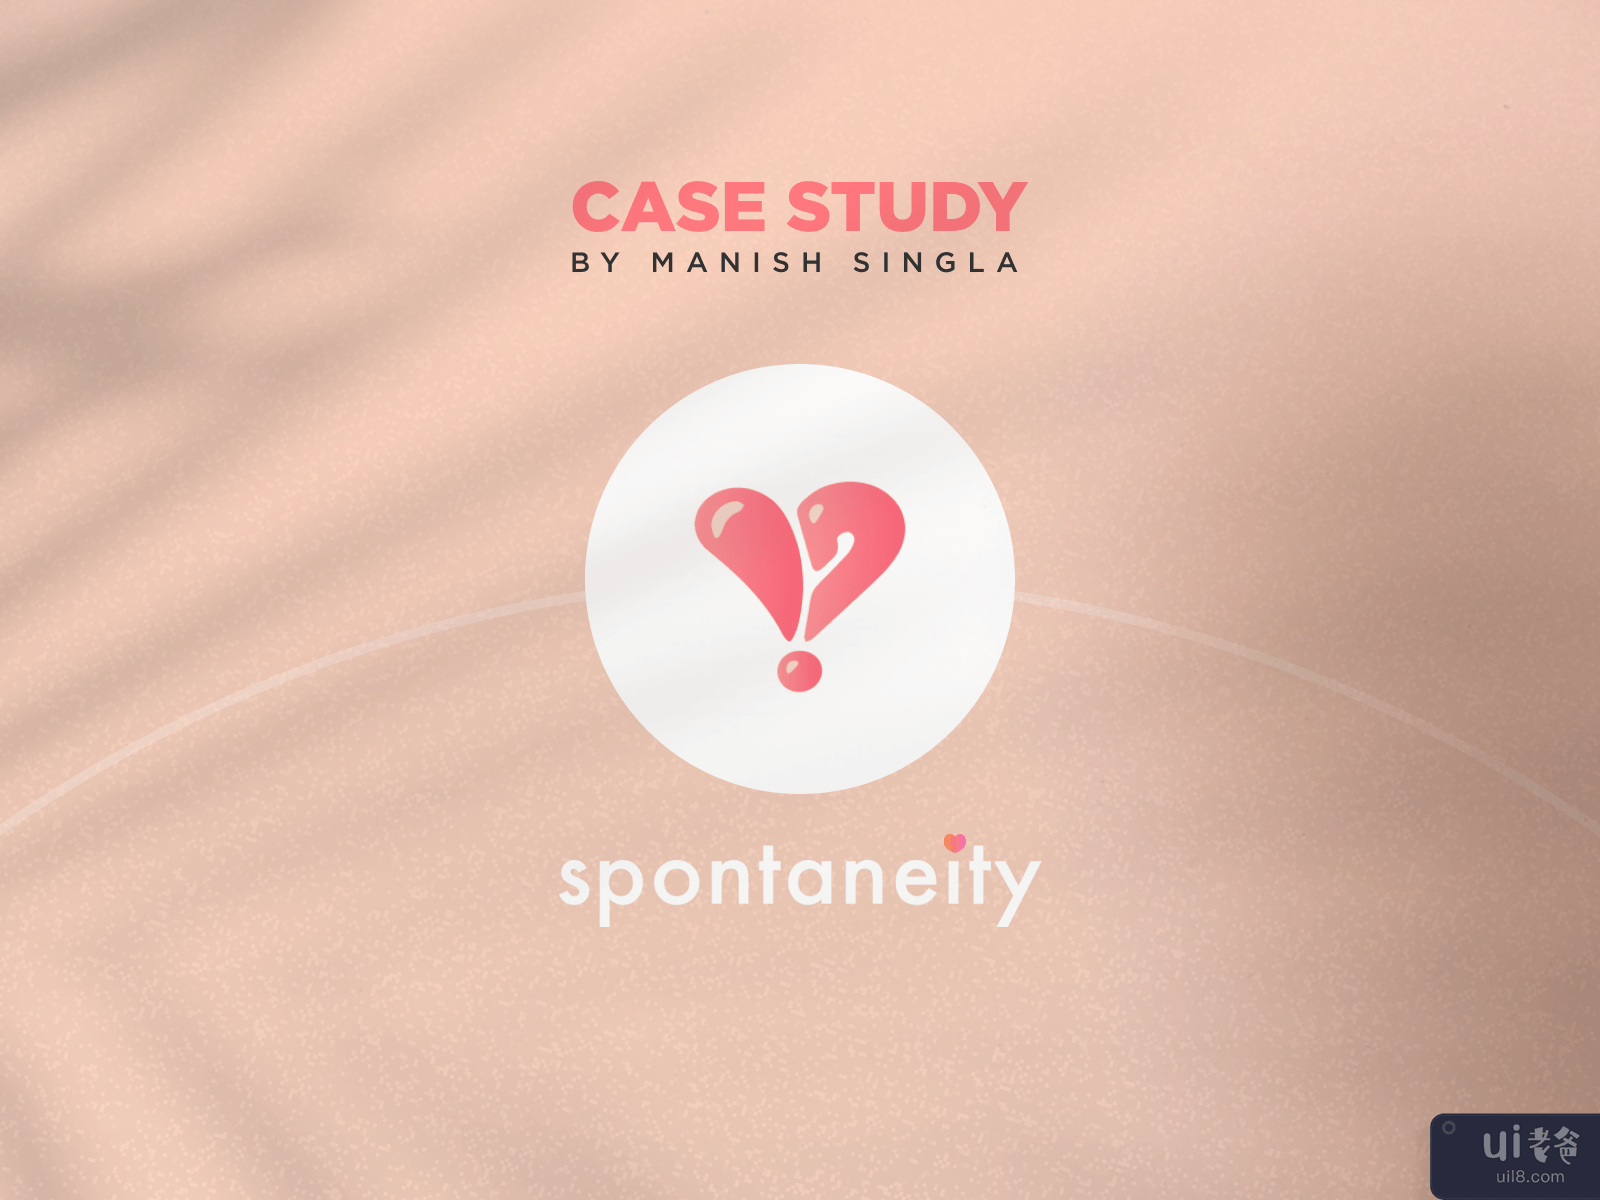 UX Case Study __ SPONTANEITY